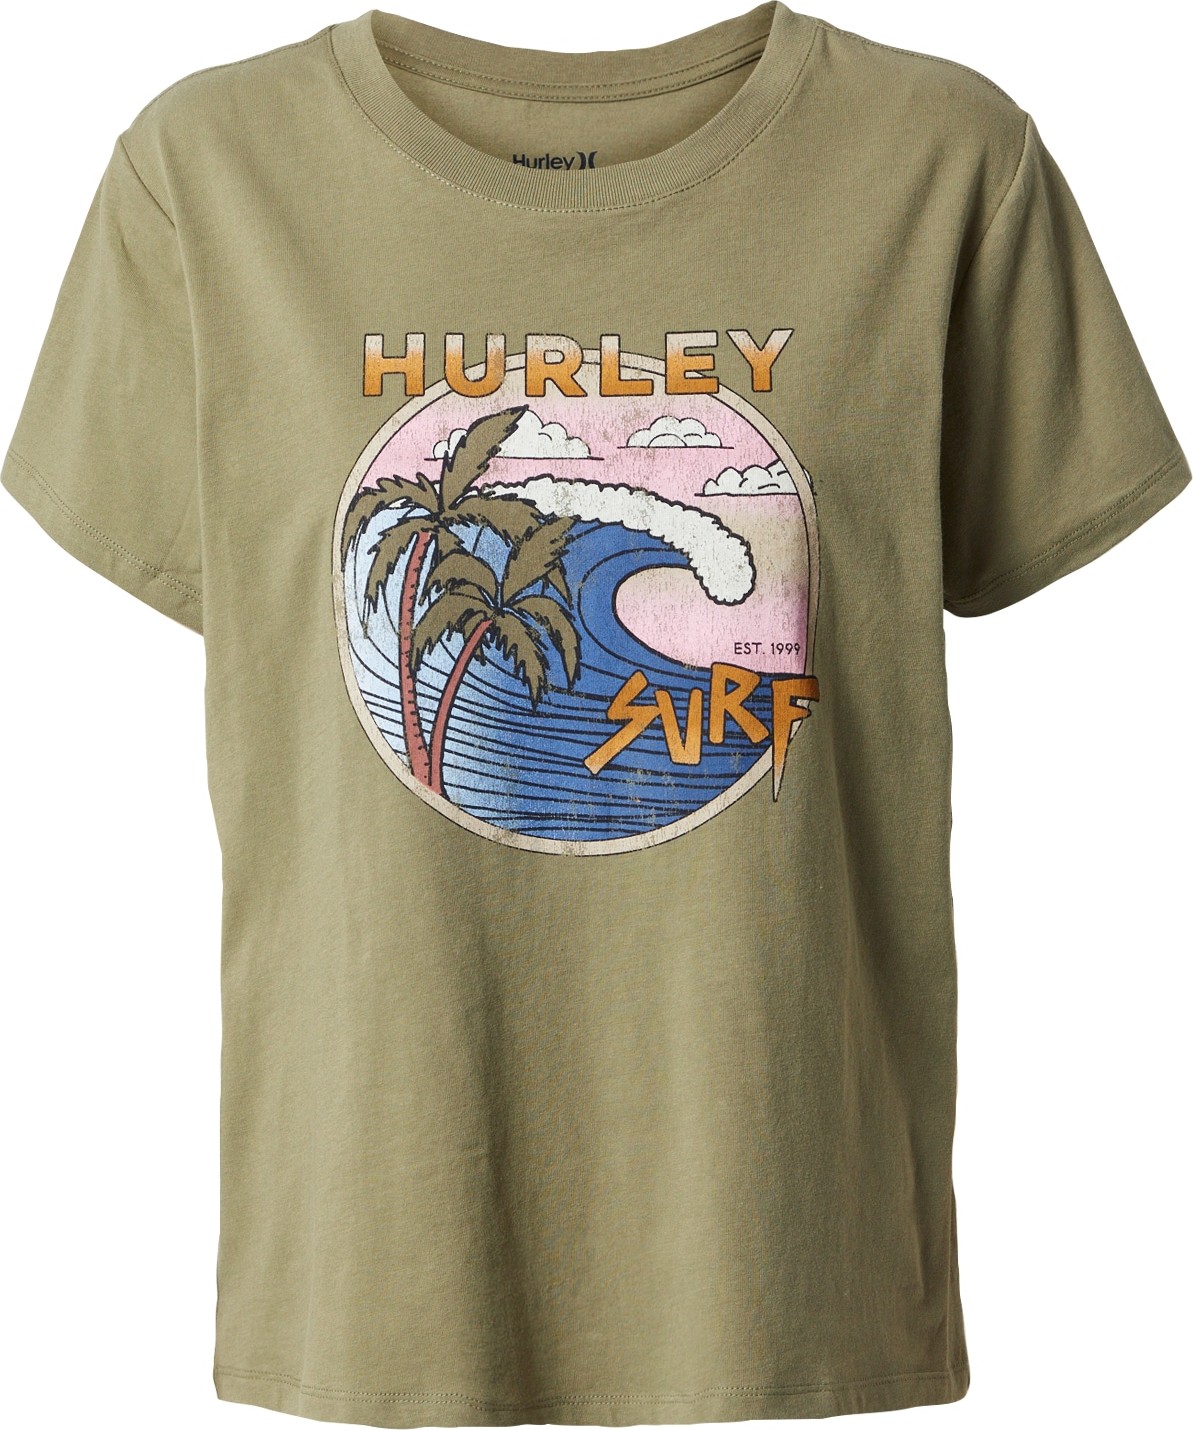 Hurley Funkční tričko modrá / olivová / pastelově růžová / bílá